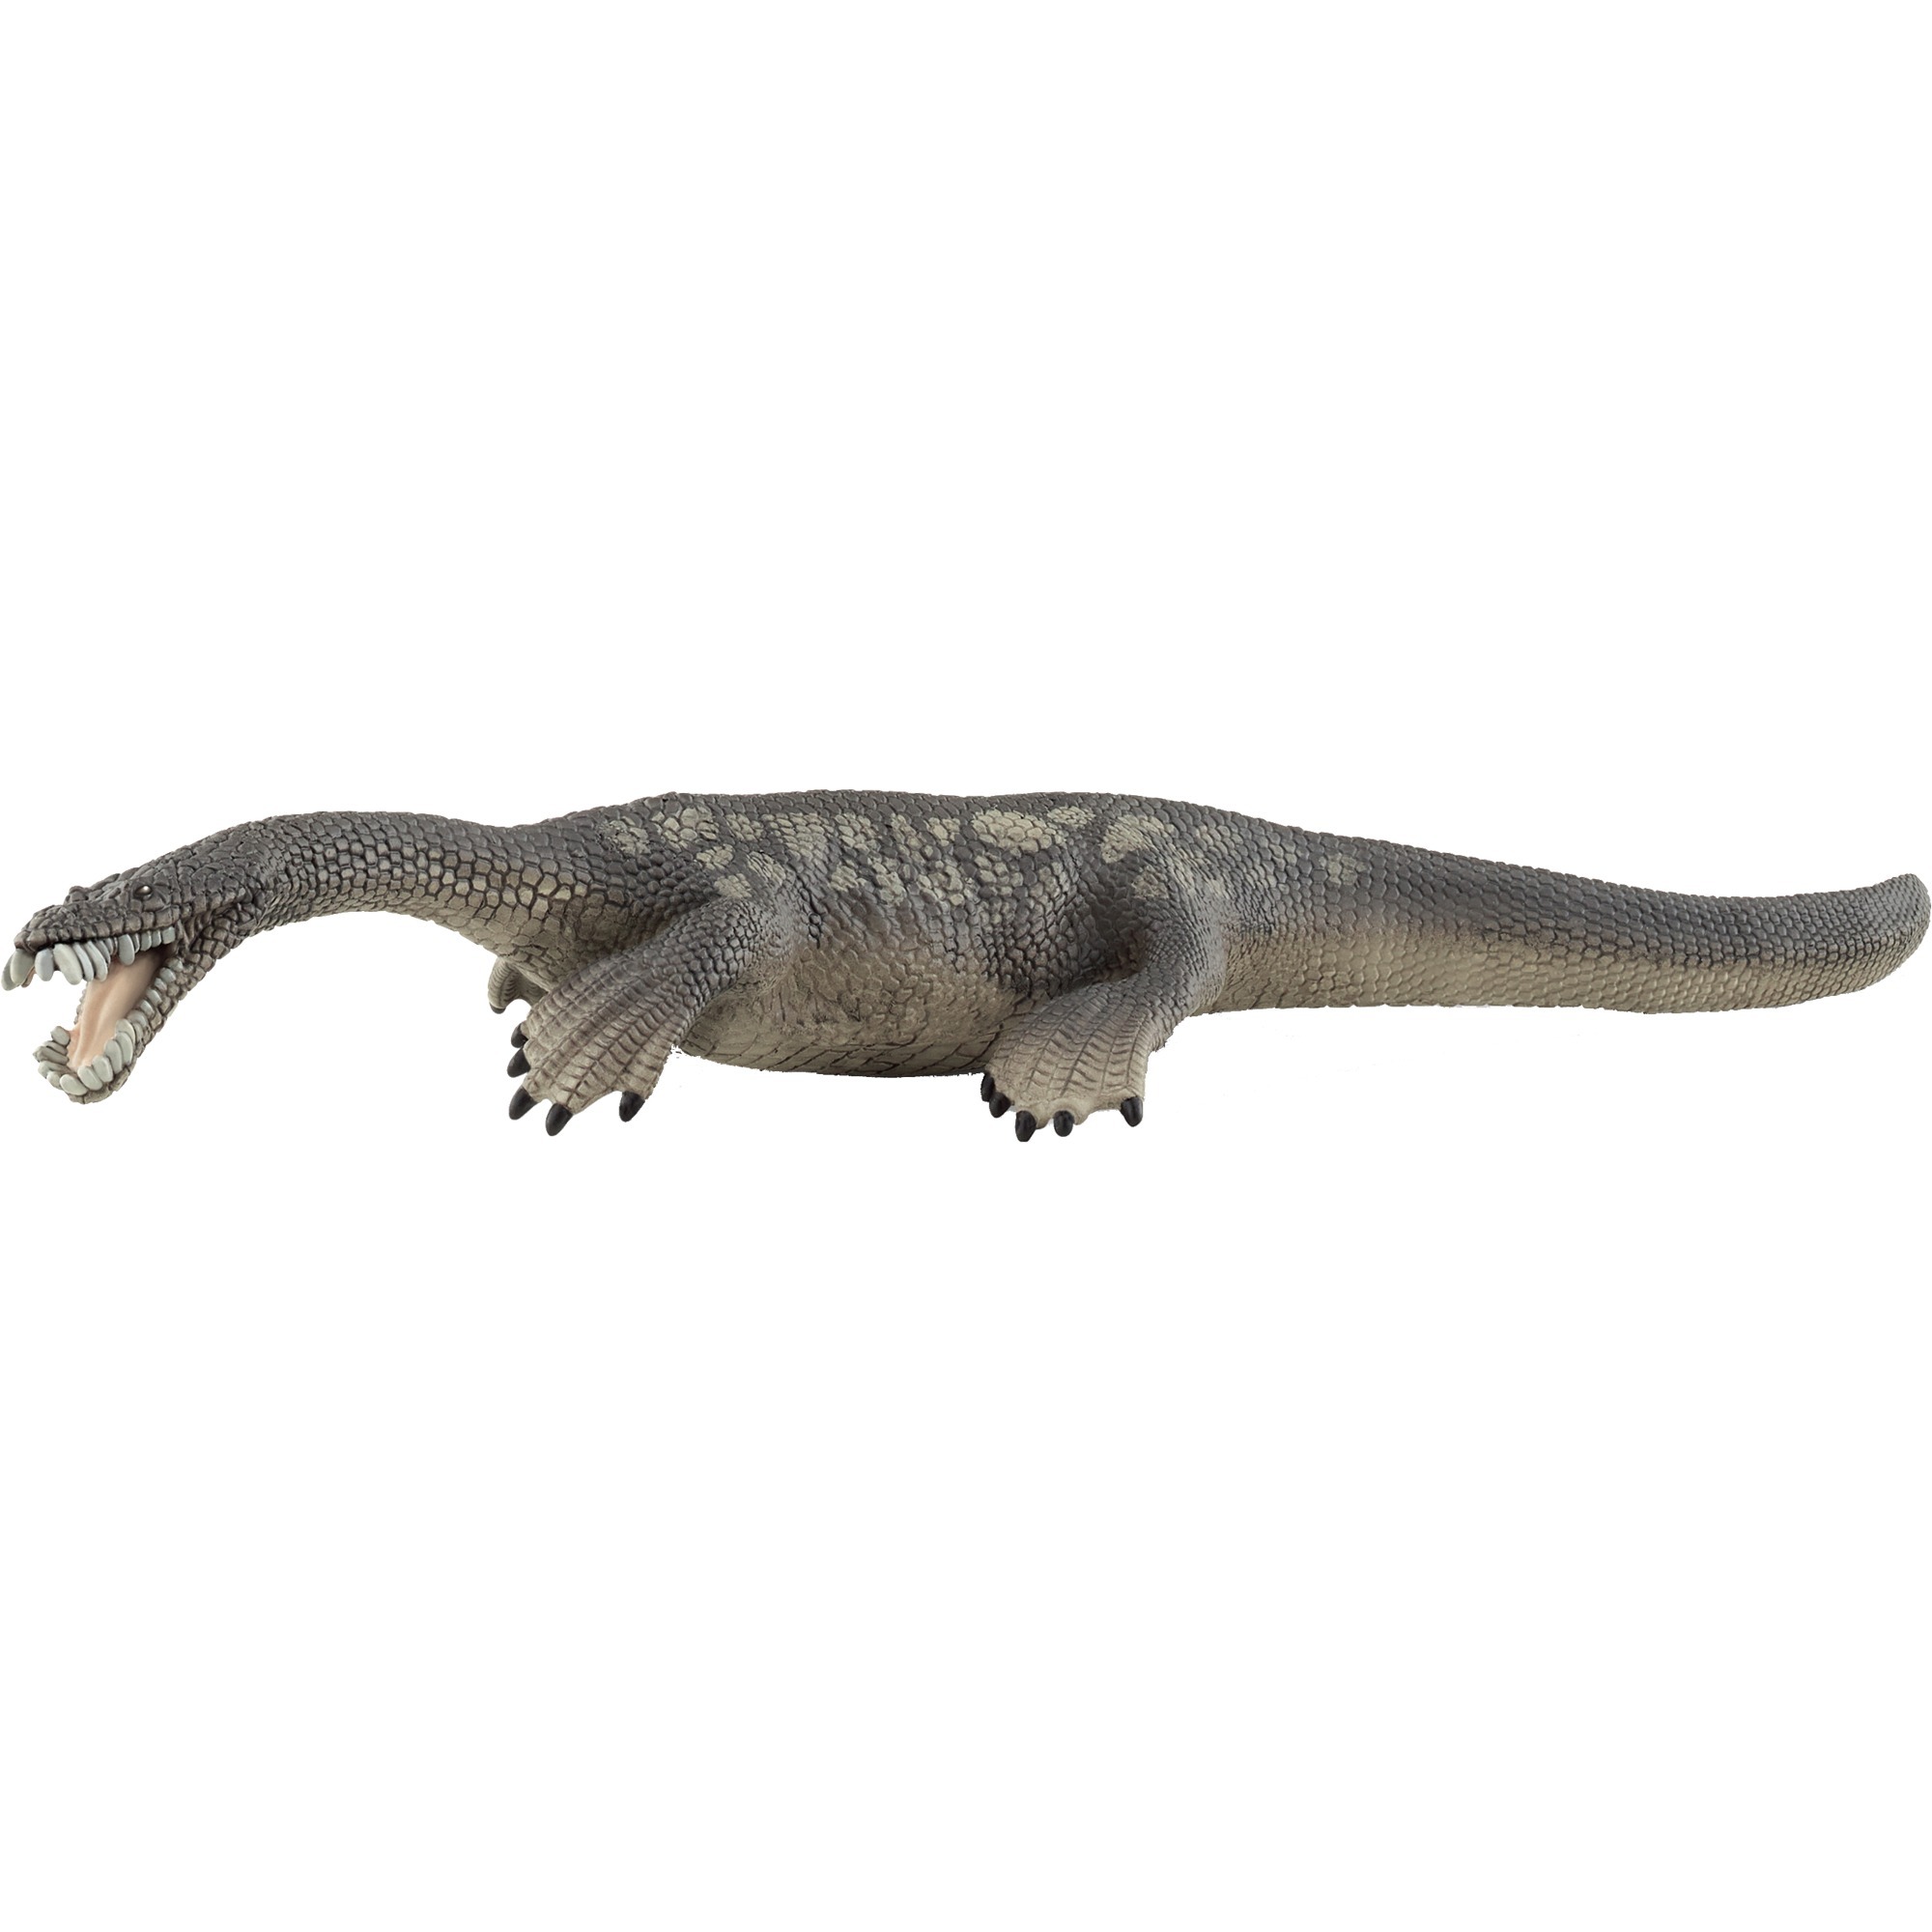 Image of Alternate - Dinosaurs Nothosaurus, Spielfigur online einkaufen bei Alternate